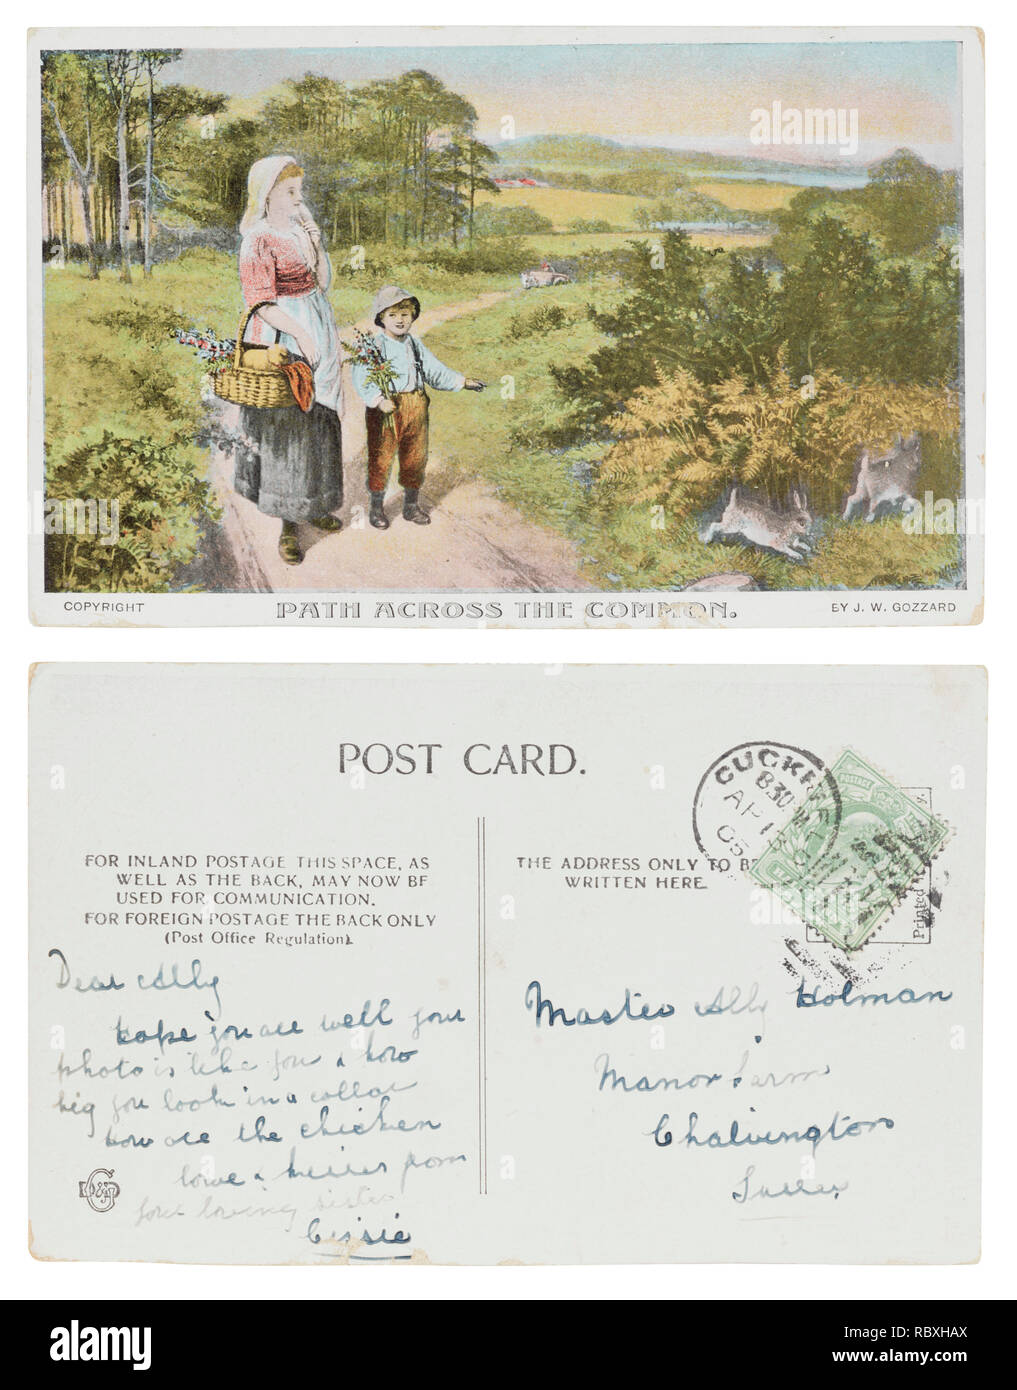 Cruzando la ruta postal común enviados desde Cissie en Cuckfield en abril de 1908 a su hermano pequeño aliado Homan, Manor Farm, Chalvington, Sussex Foto de stock